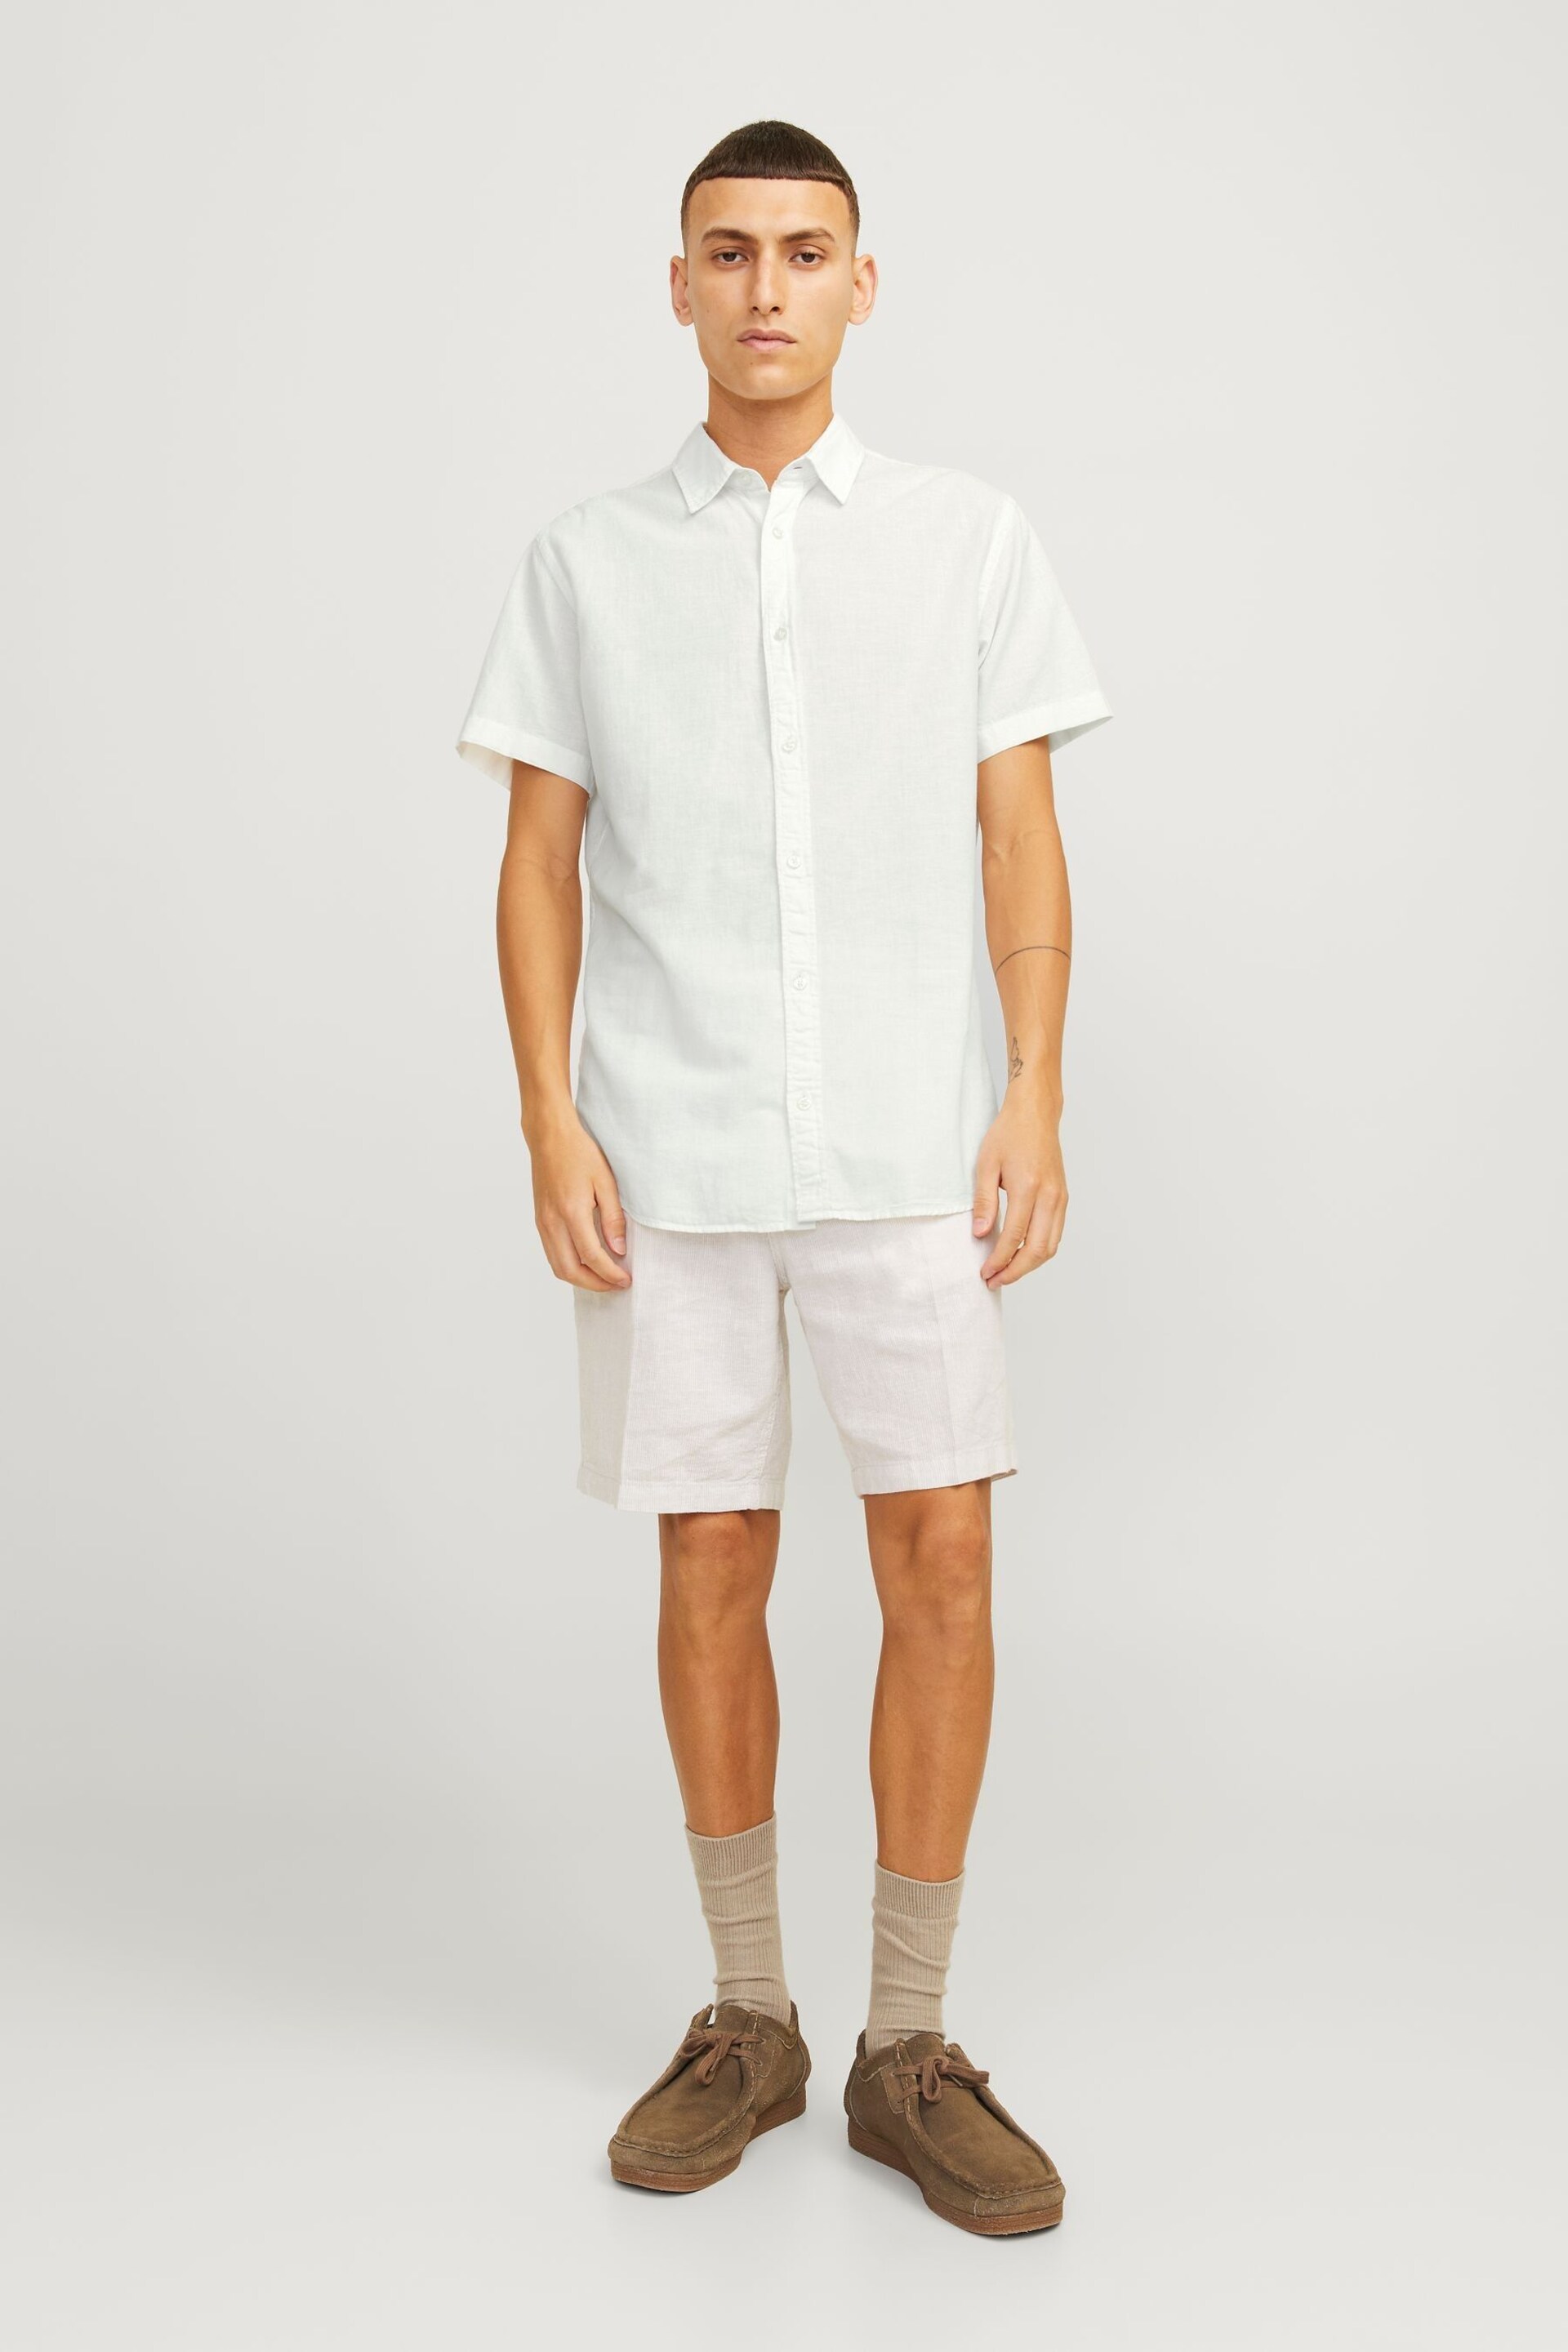 JACK & JONES White Linen Blend Short Sleeve Shirt - Image 4 of 10